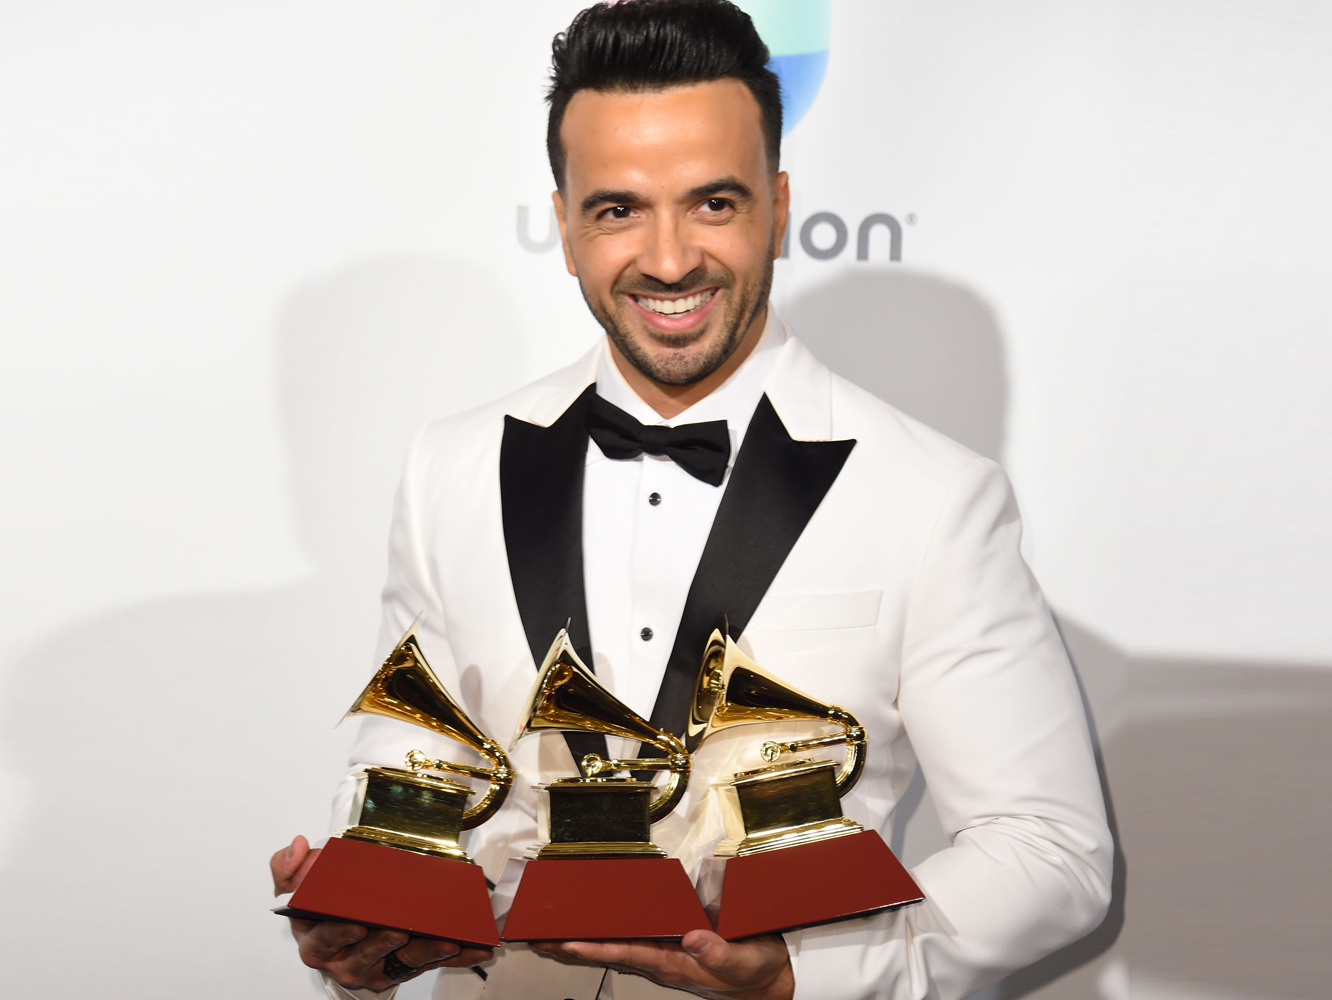  Los Grammy Irrelevantes premian a Luis Fonsi y ‘Despacito’ como Canción y Grabación del Año